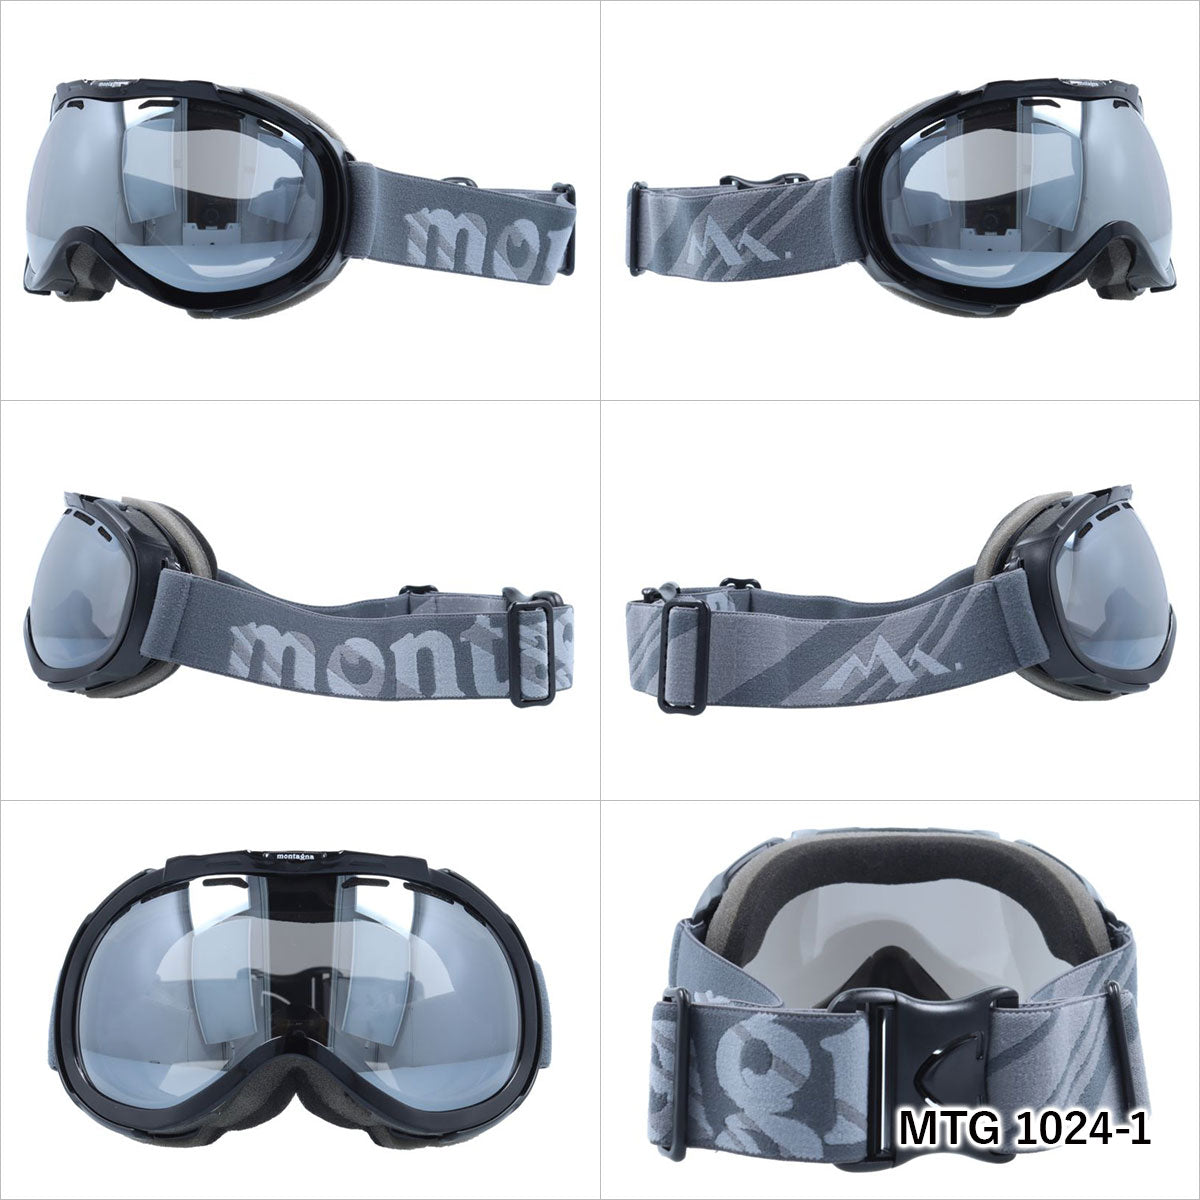 モンターニャ ゴーグル ミラーレンズ アジアンフィット montagna MTG 1024 メンズ レディース スキー スノーボード ウィンタースポーツ 曇り防止 球面レンズ ダブルレンズ 眼鏡対応 ヘルメット対応